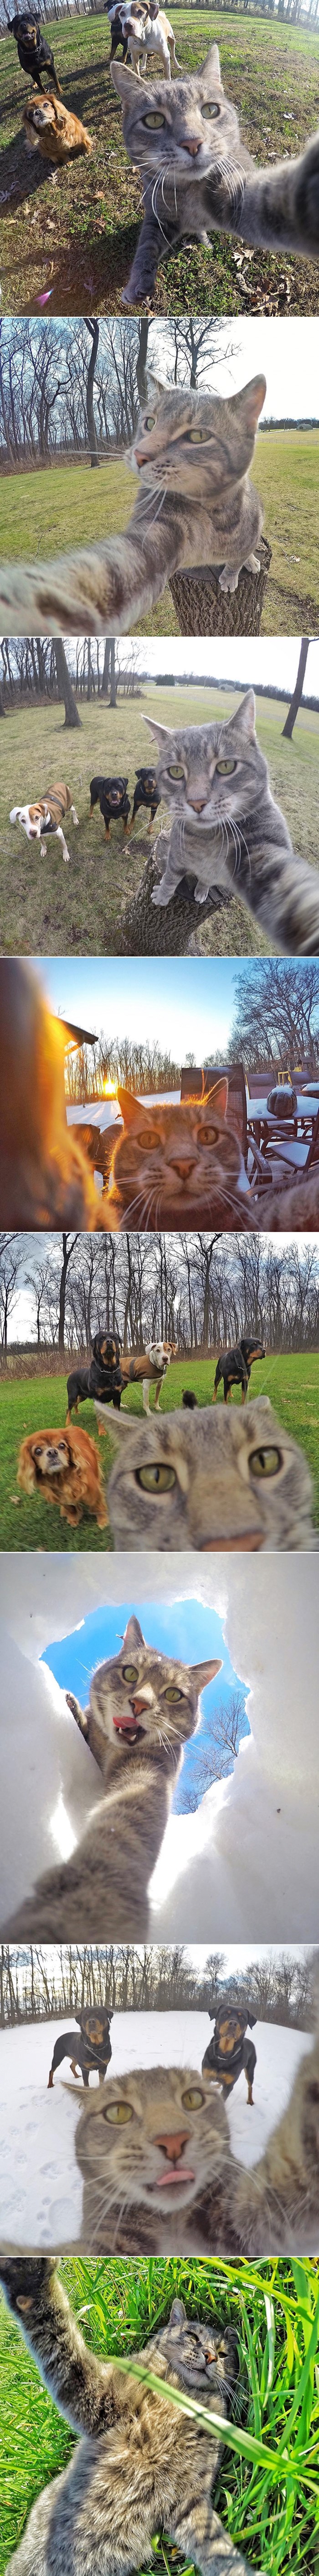 Ova mačka puca bolje selfije s ekipom od vas!